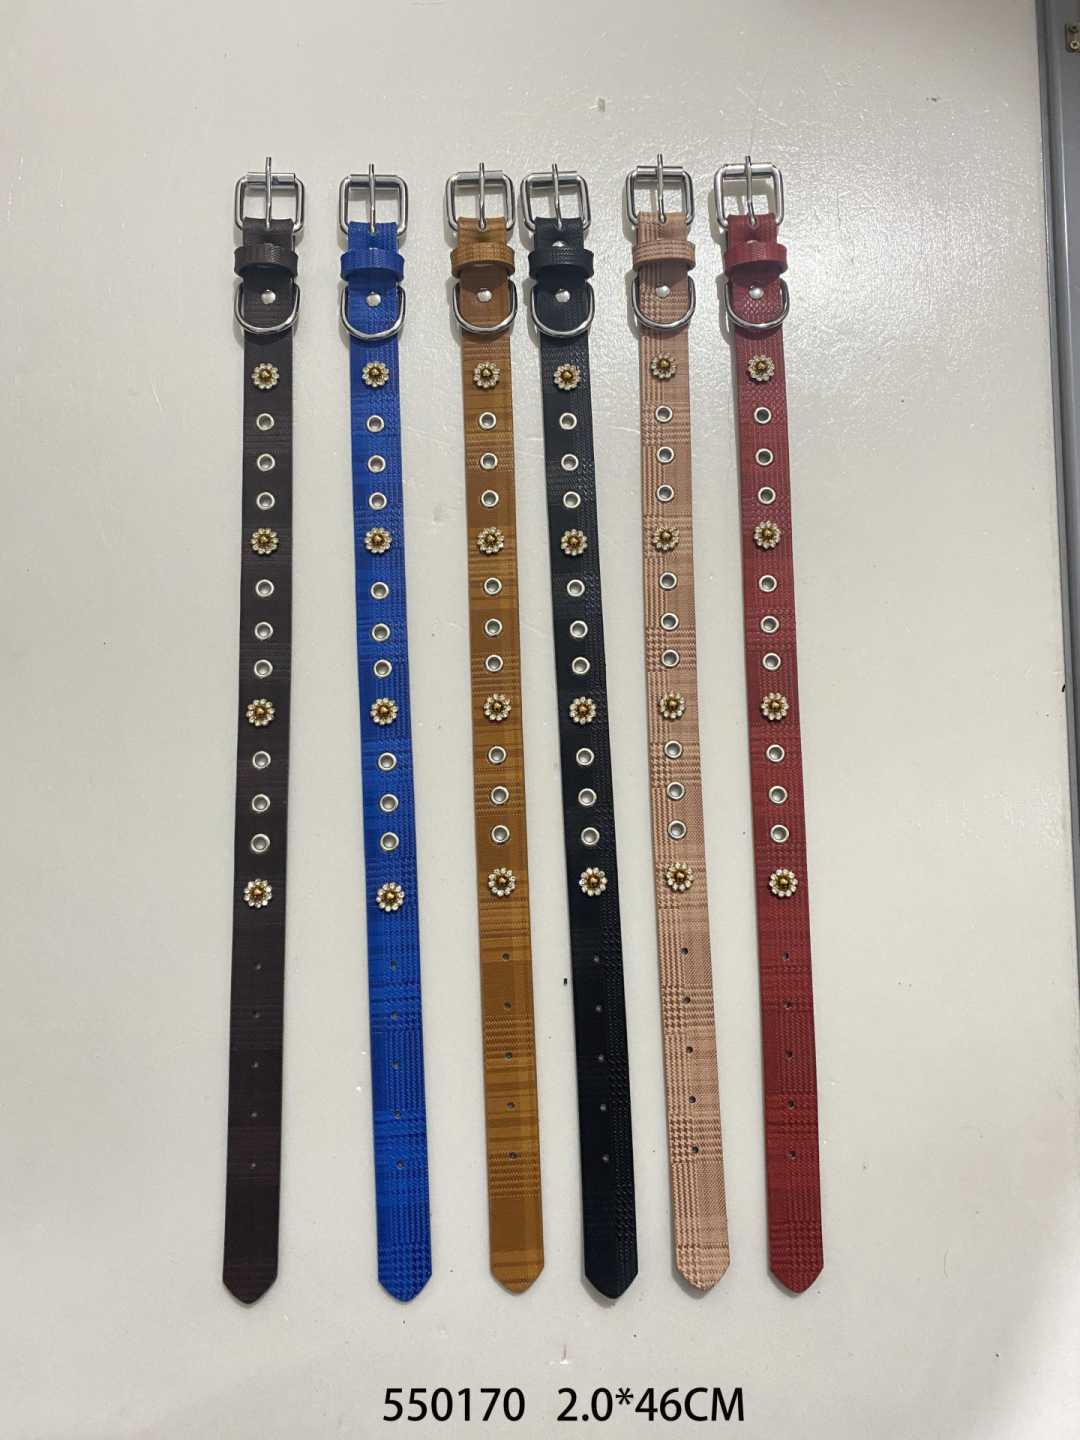 Collar - Dog collar - 2x46cm - 550170